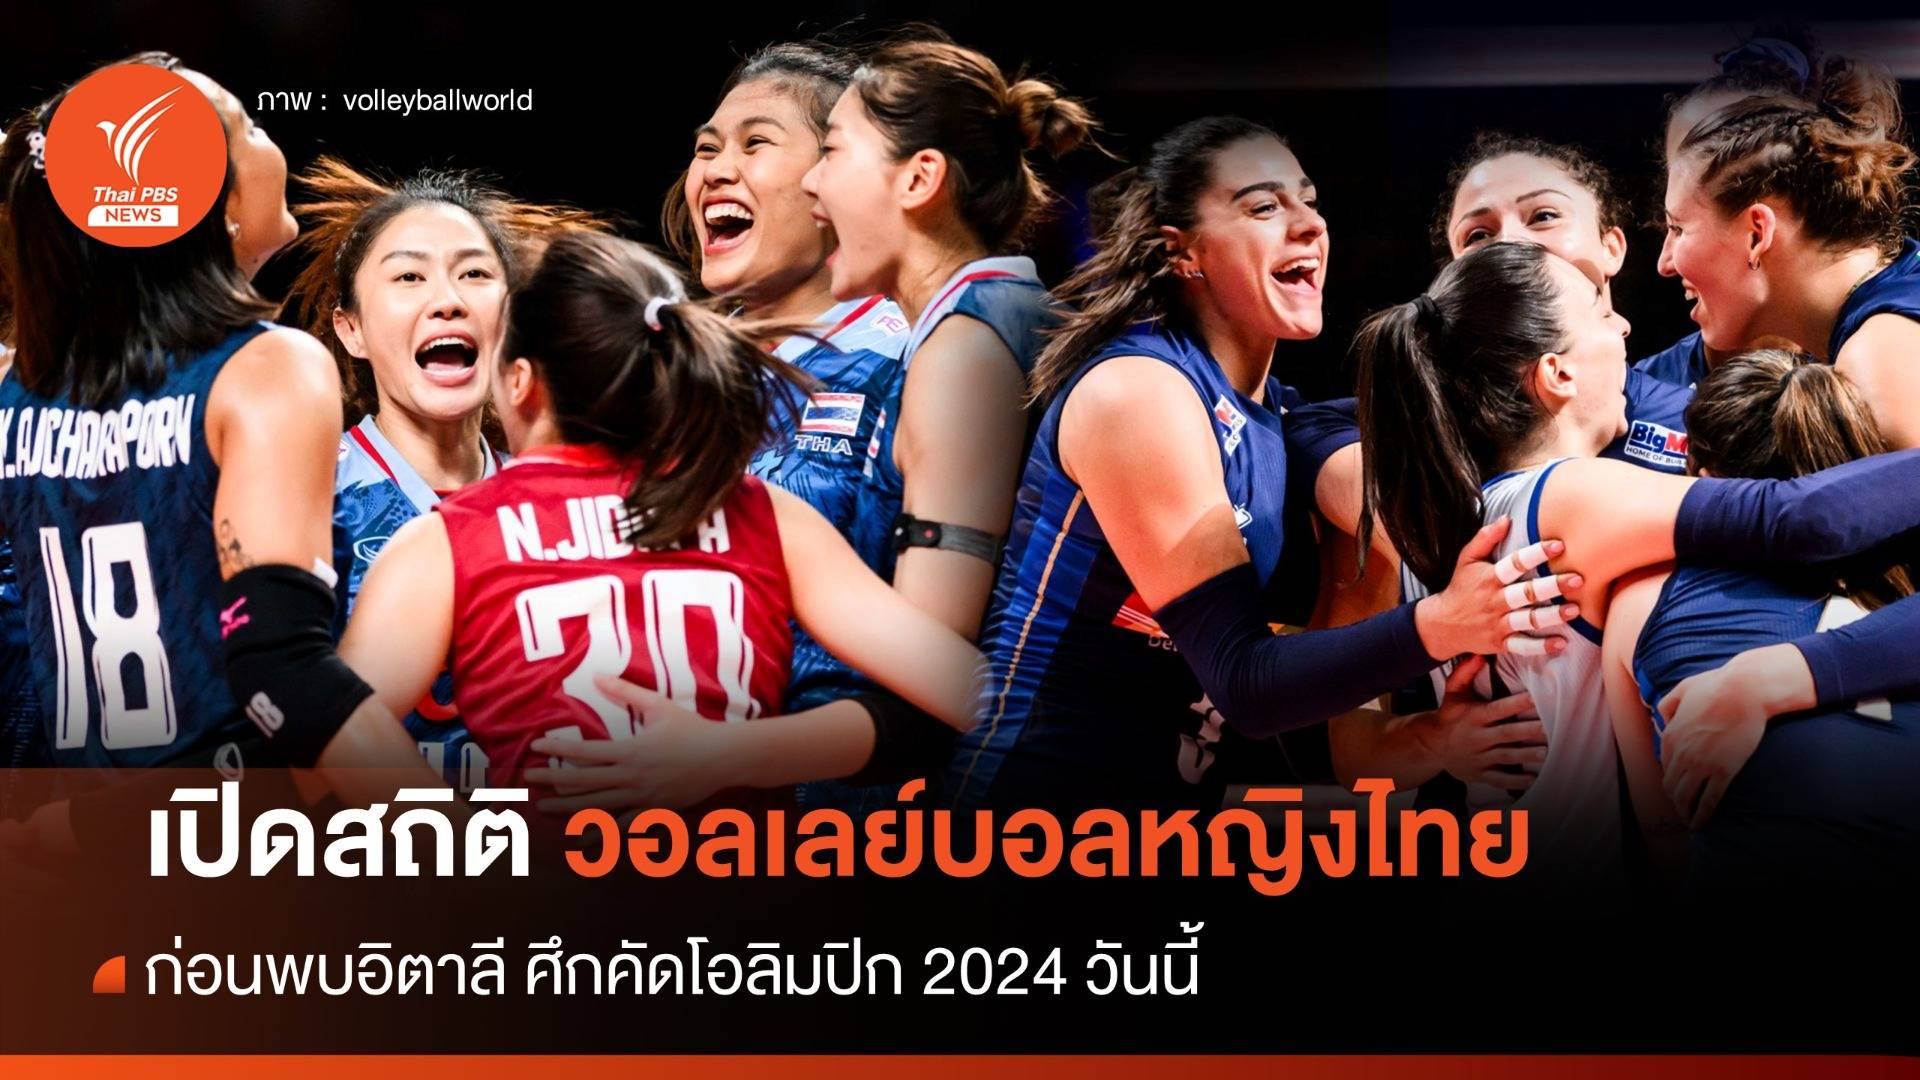 สถิติวอลเลย์บอลหญิงไทย ก่อนพบอิตาลี ศึกคัดโอลิมปิก 2024 วันนี้ 